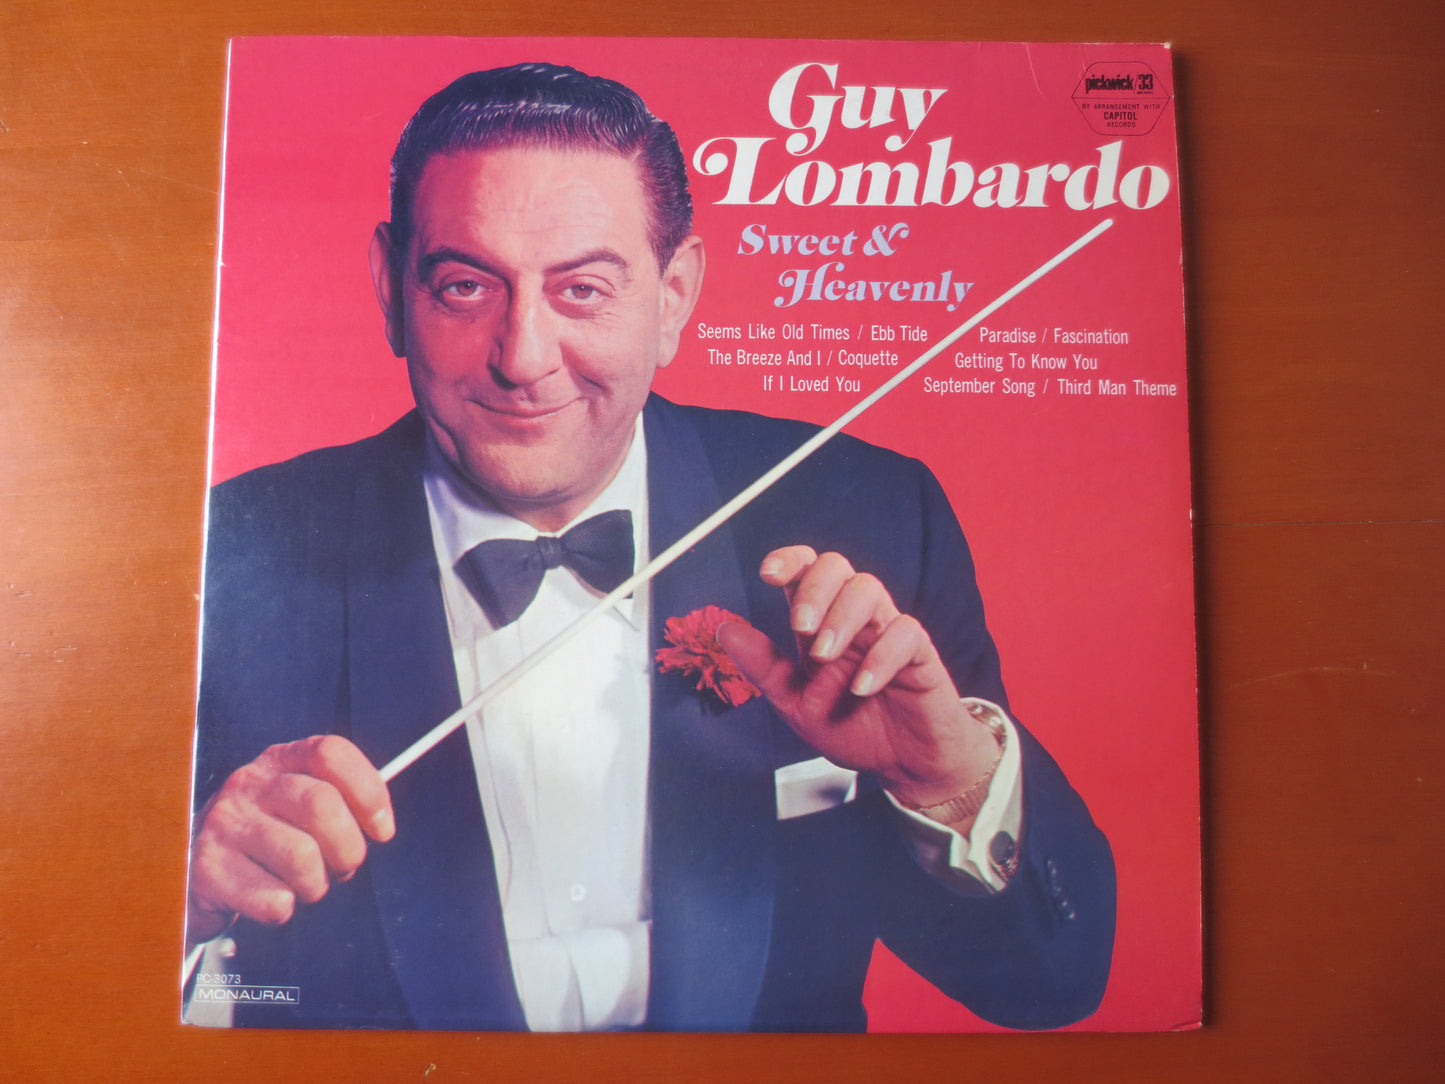 GUY LOMBARDO, Sweet and HEAVENLY, Guy Lombardo Records, Jazz Records, Record Vinyl, Guy Lombardo Albums, Vinyl, 1967 Record